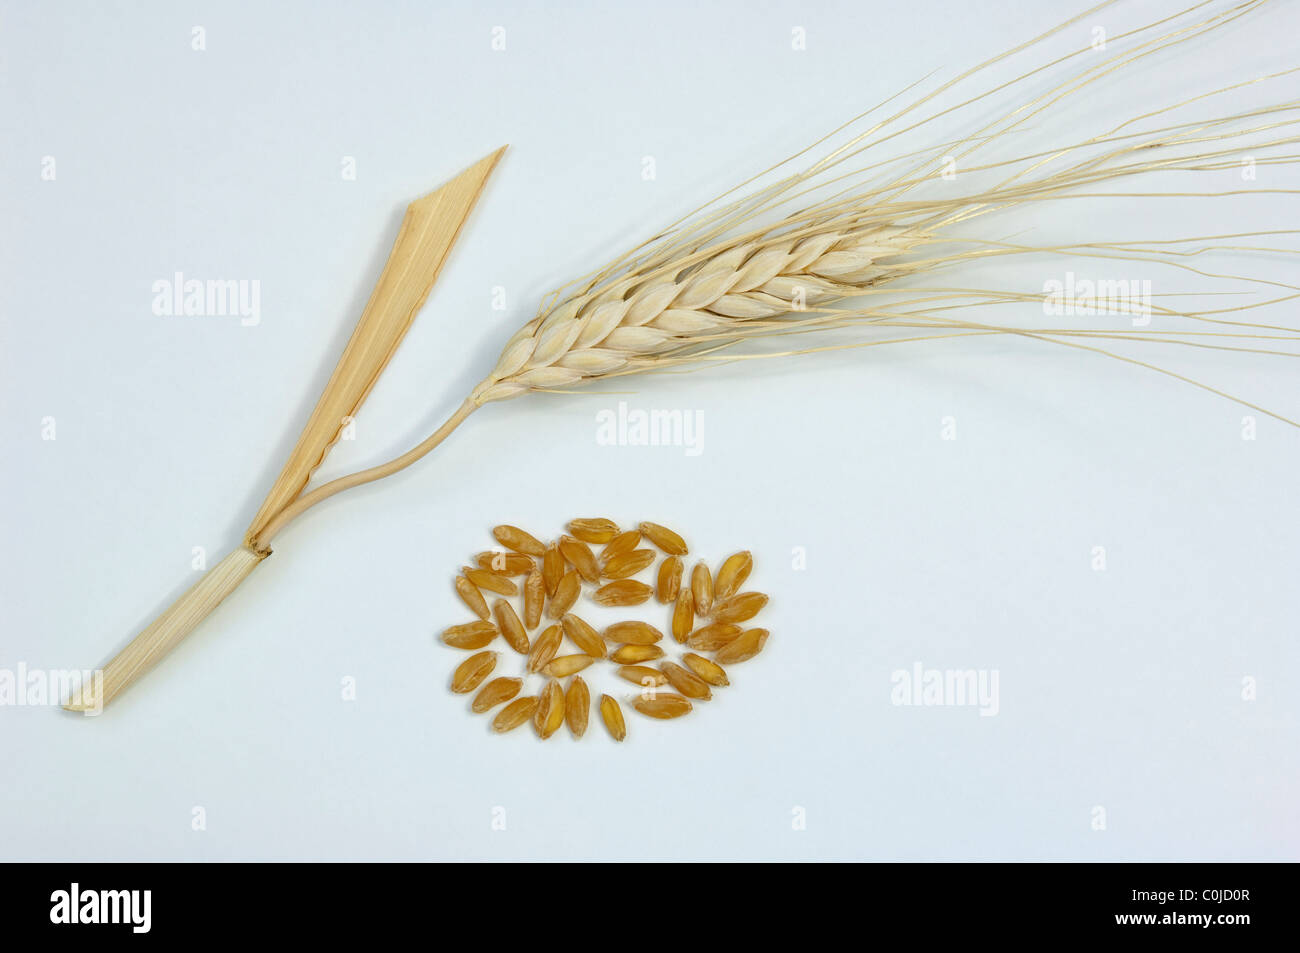 Frumento duro, Maccheroni Il grano (Triticum durum), l'orecchio e semi. Studio Immagine contro uno sfondo bianco. Foto Stock